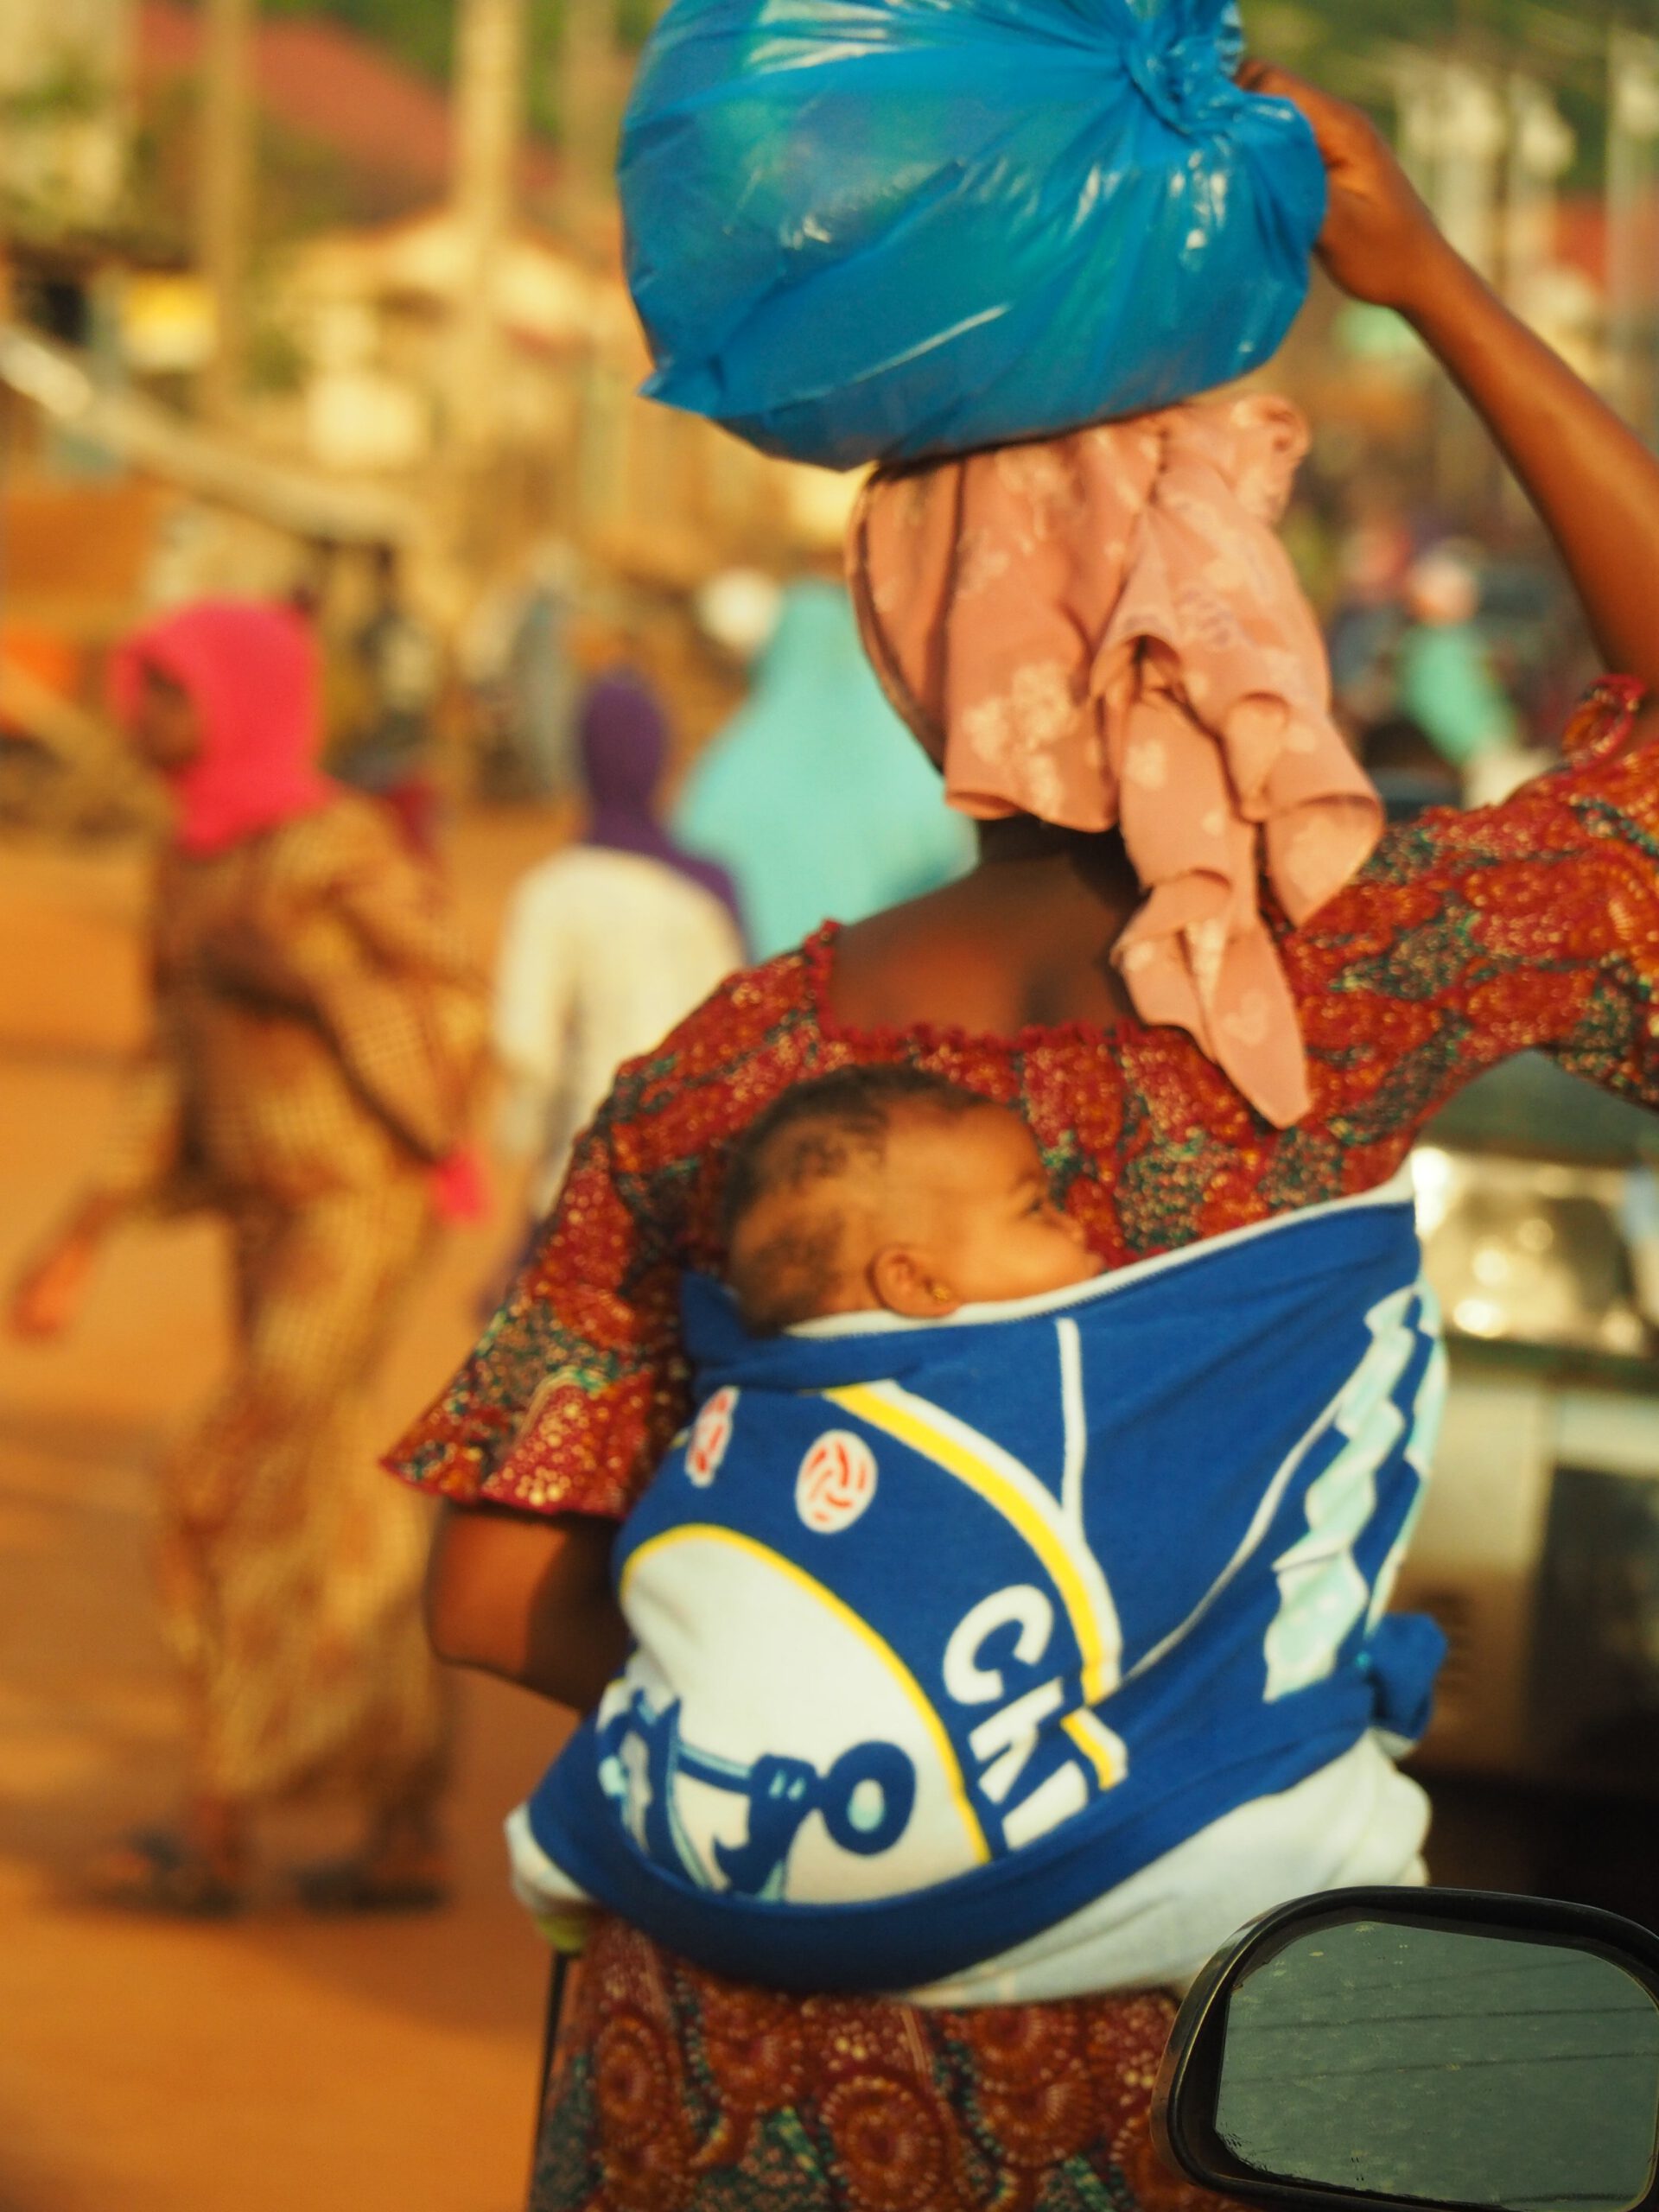 Una mujer con su bebe en Guinea Conakry